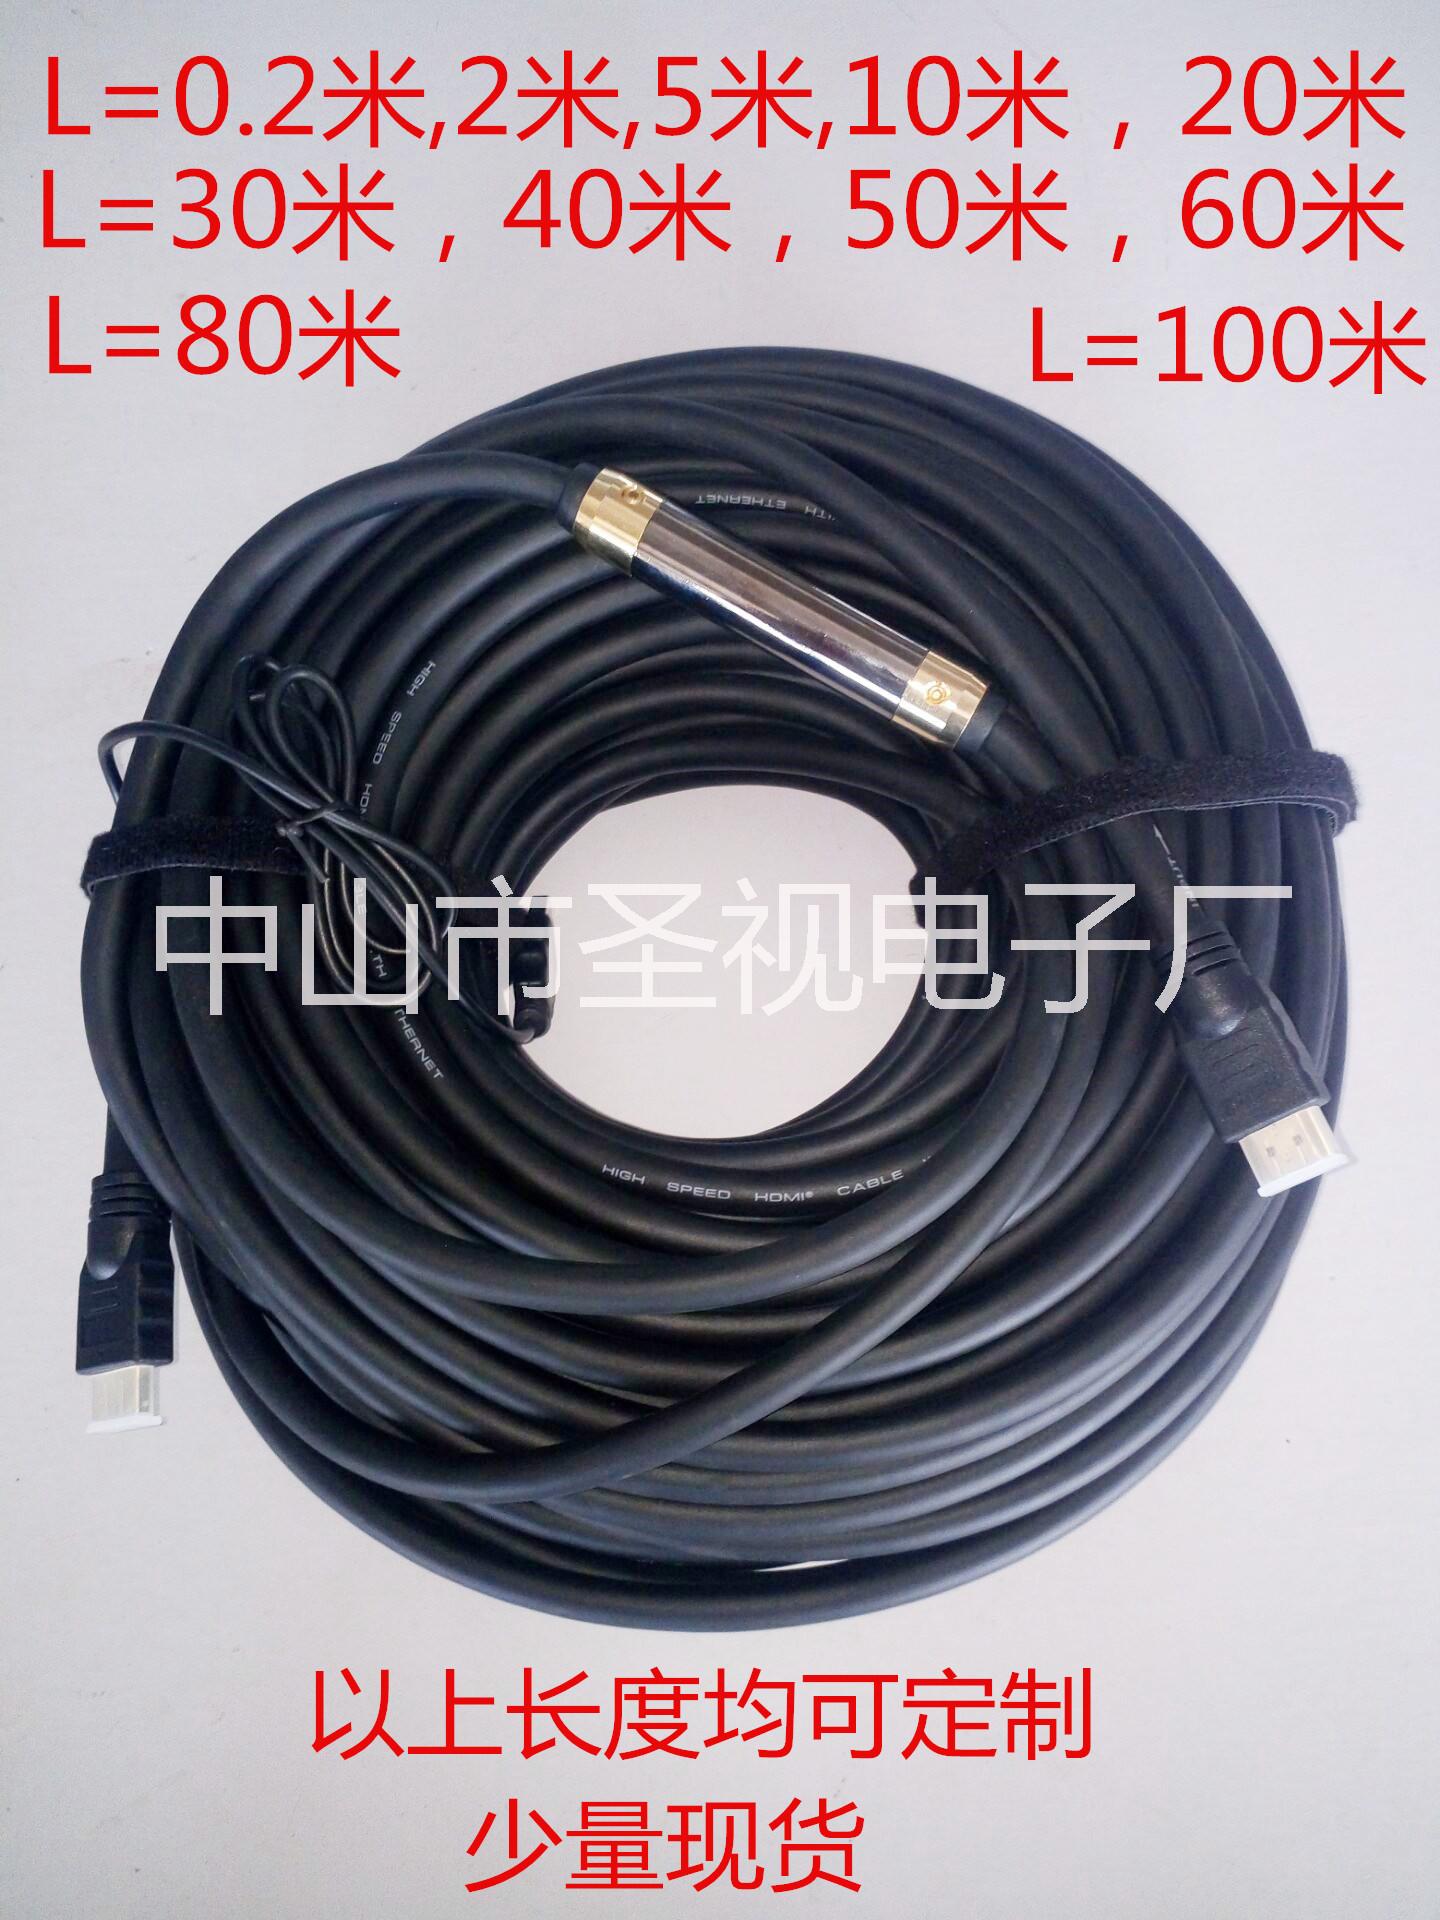 供应HDMI线